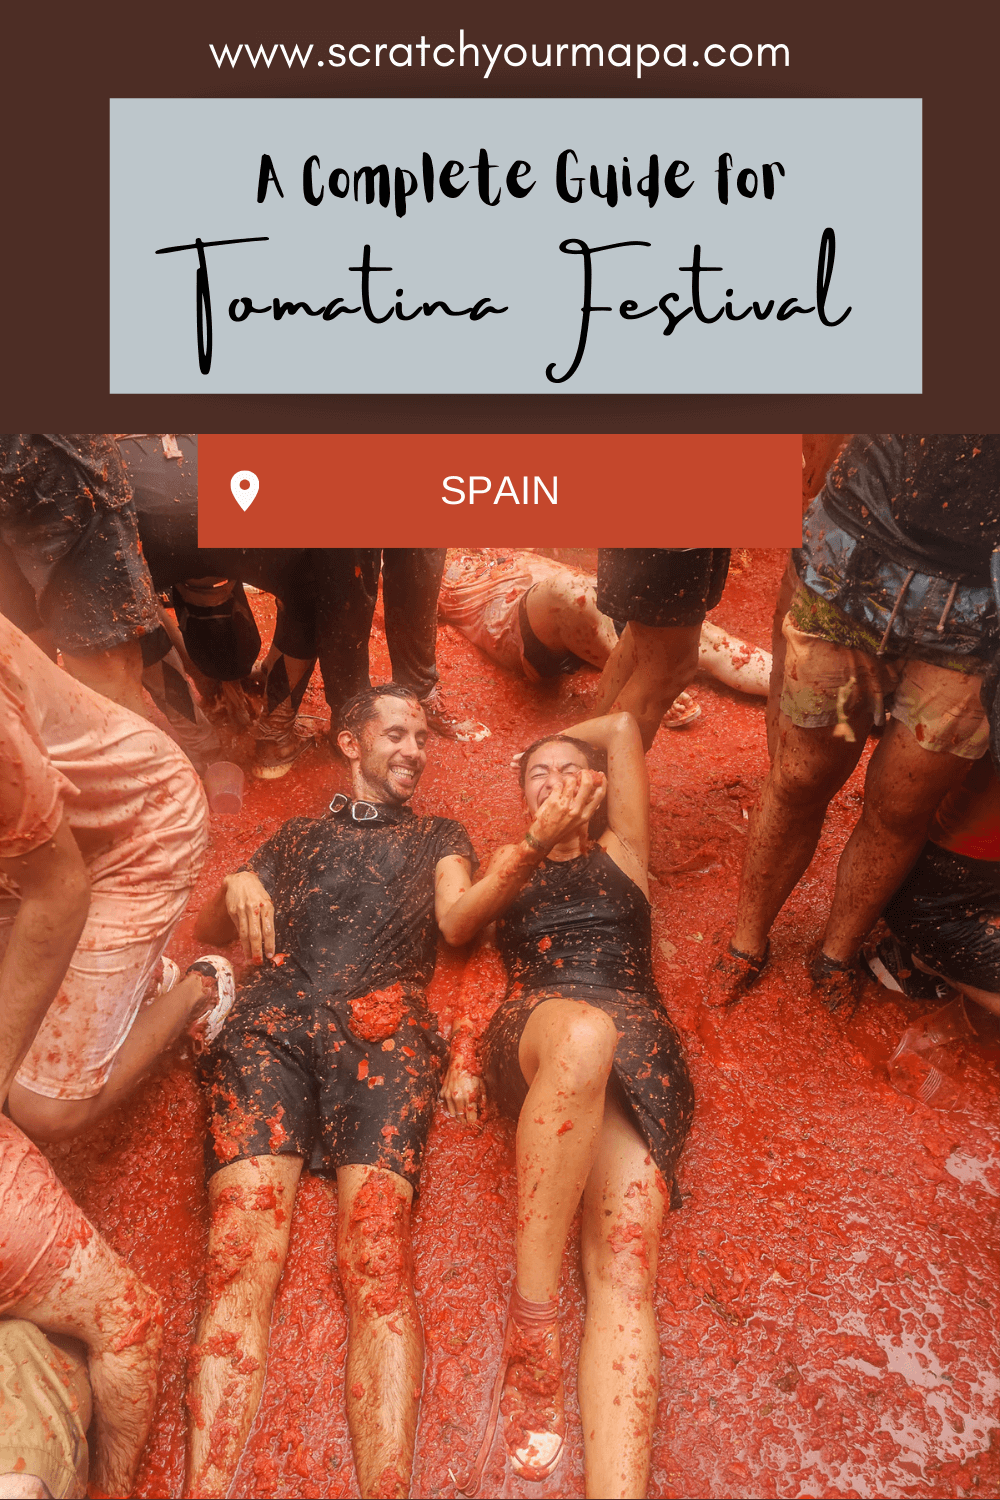 La Tomatina festival in Spain travel guide